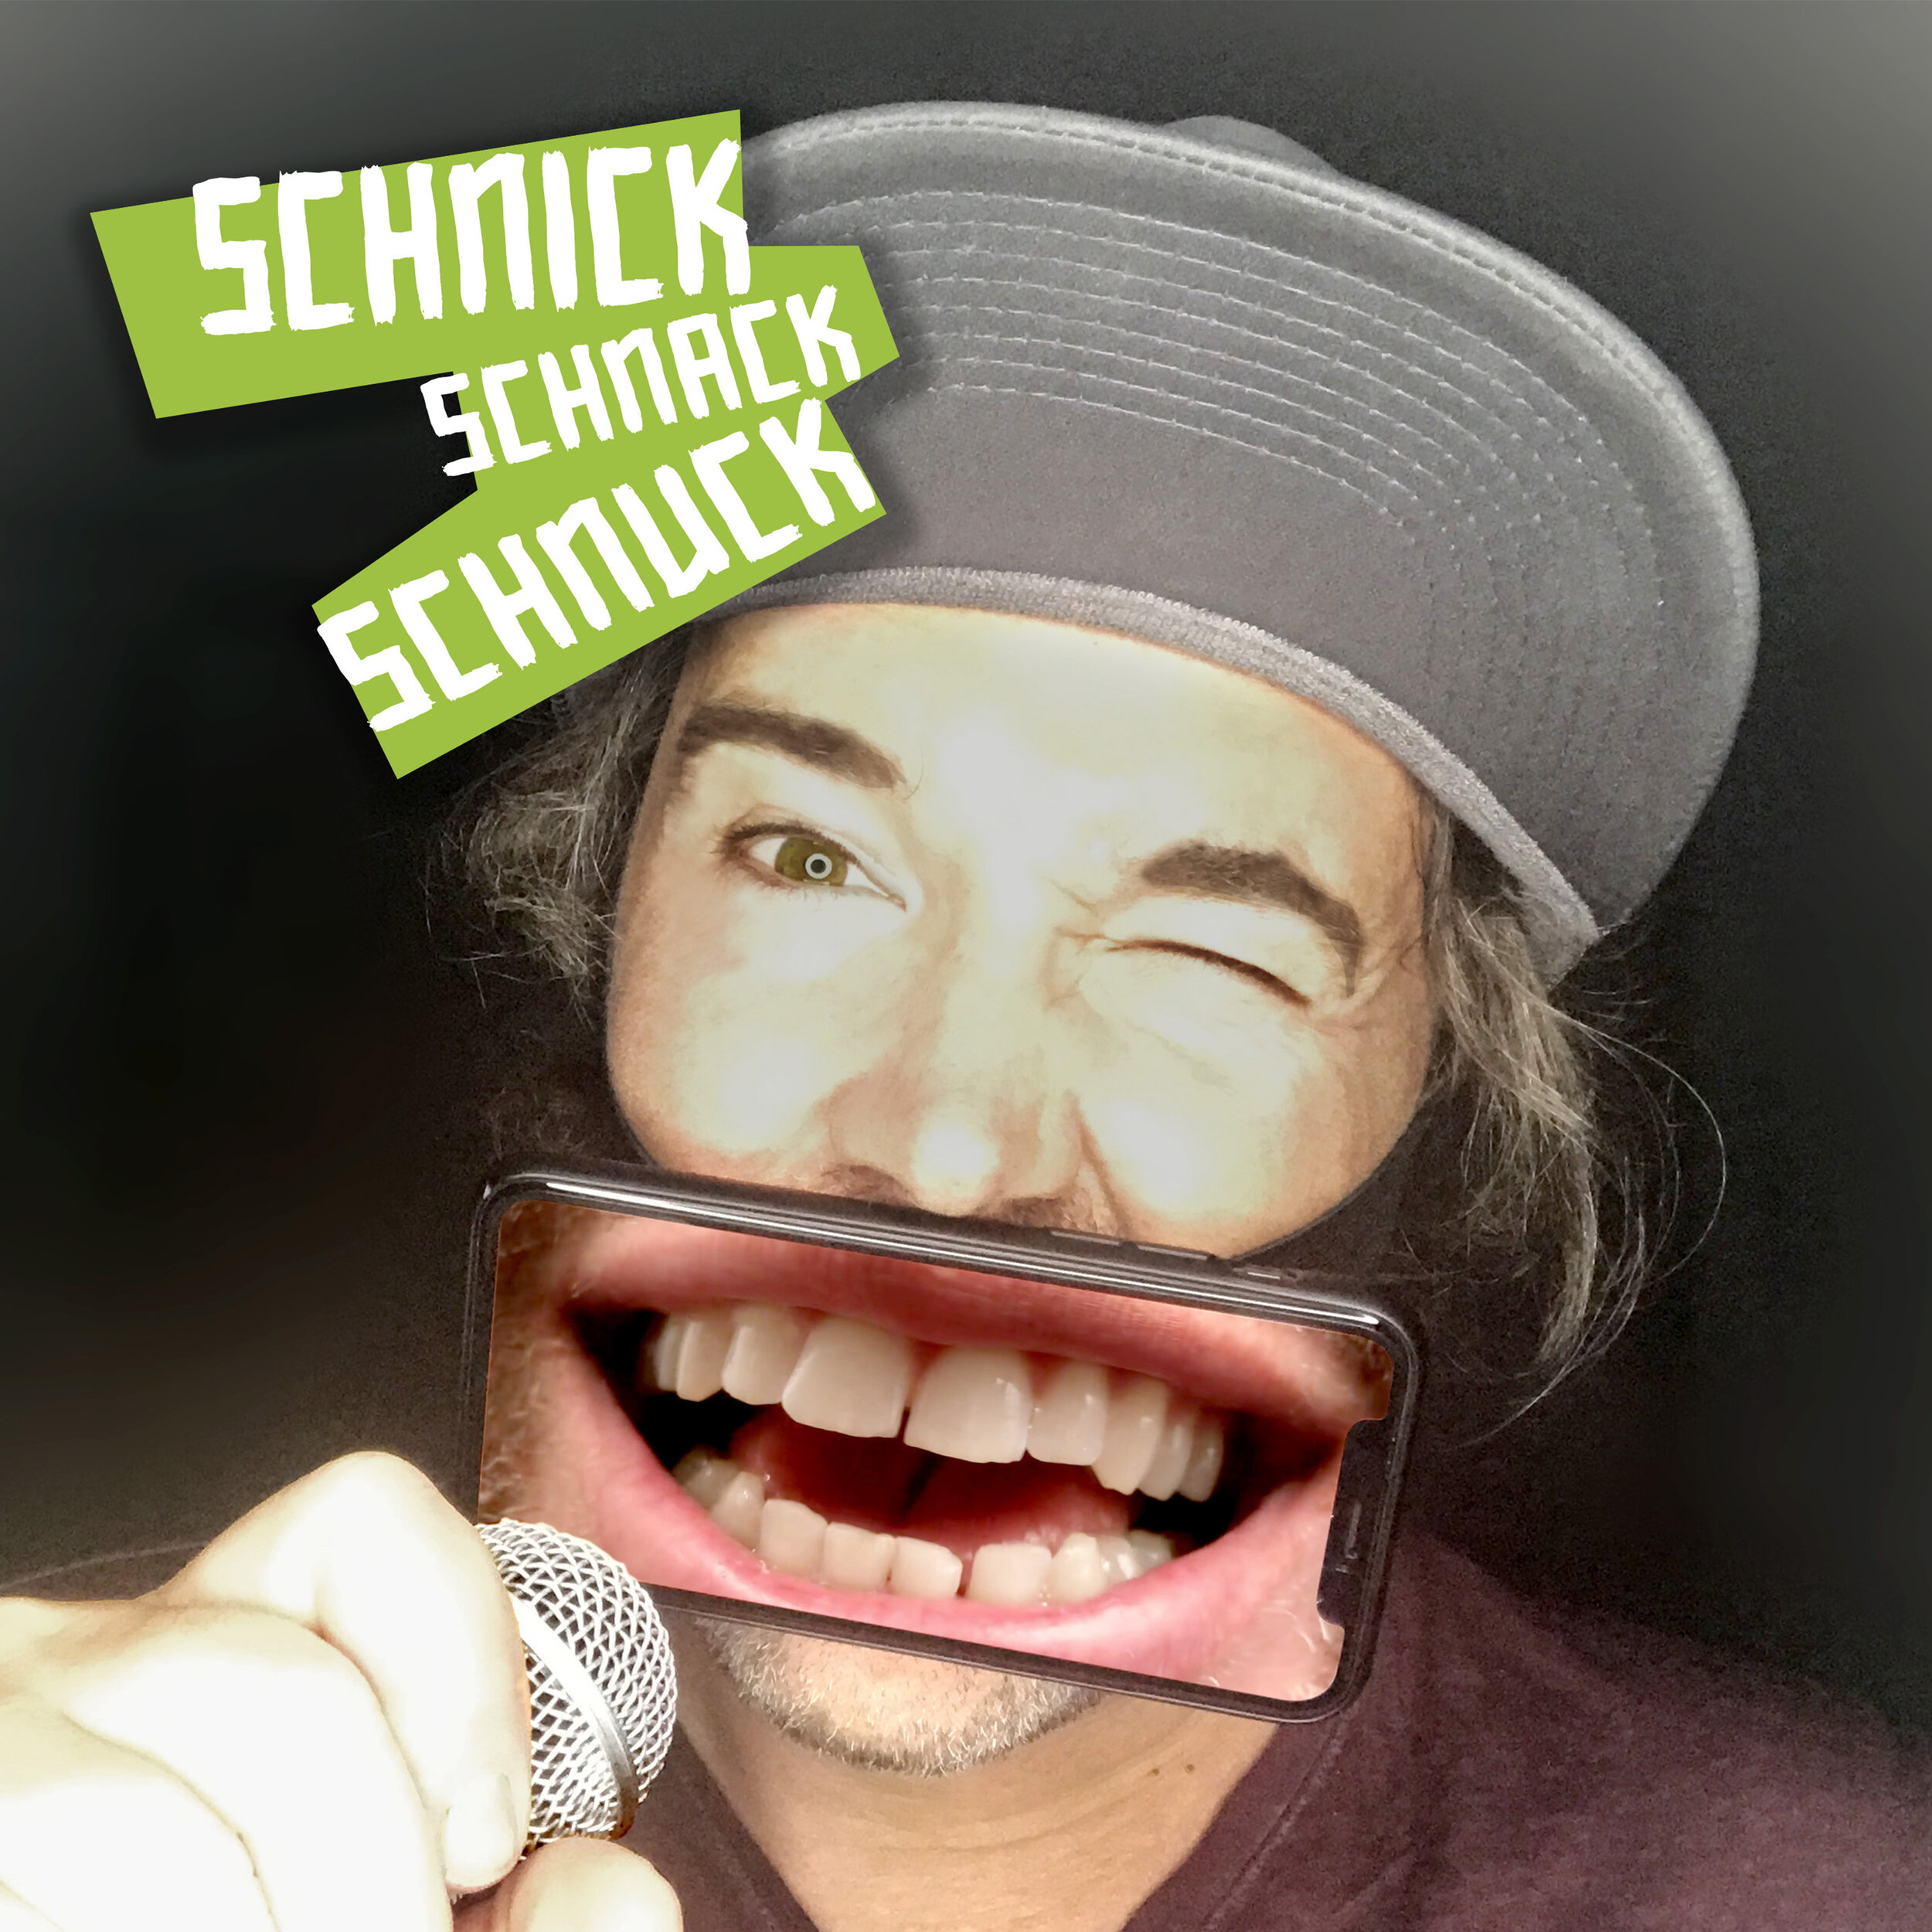 Schnick schnack schnuck watch online